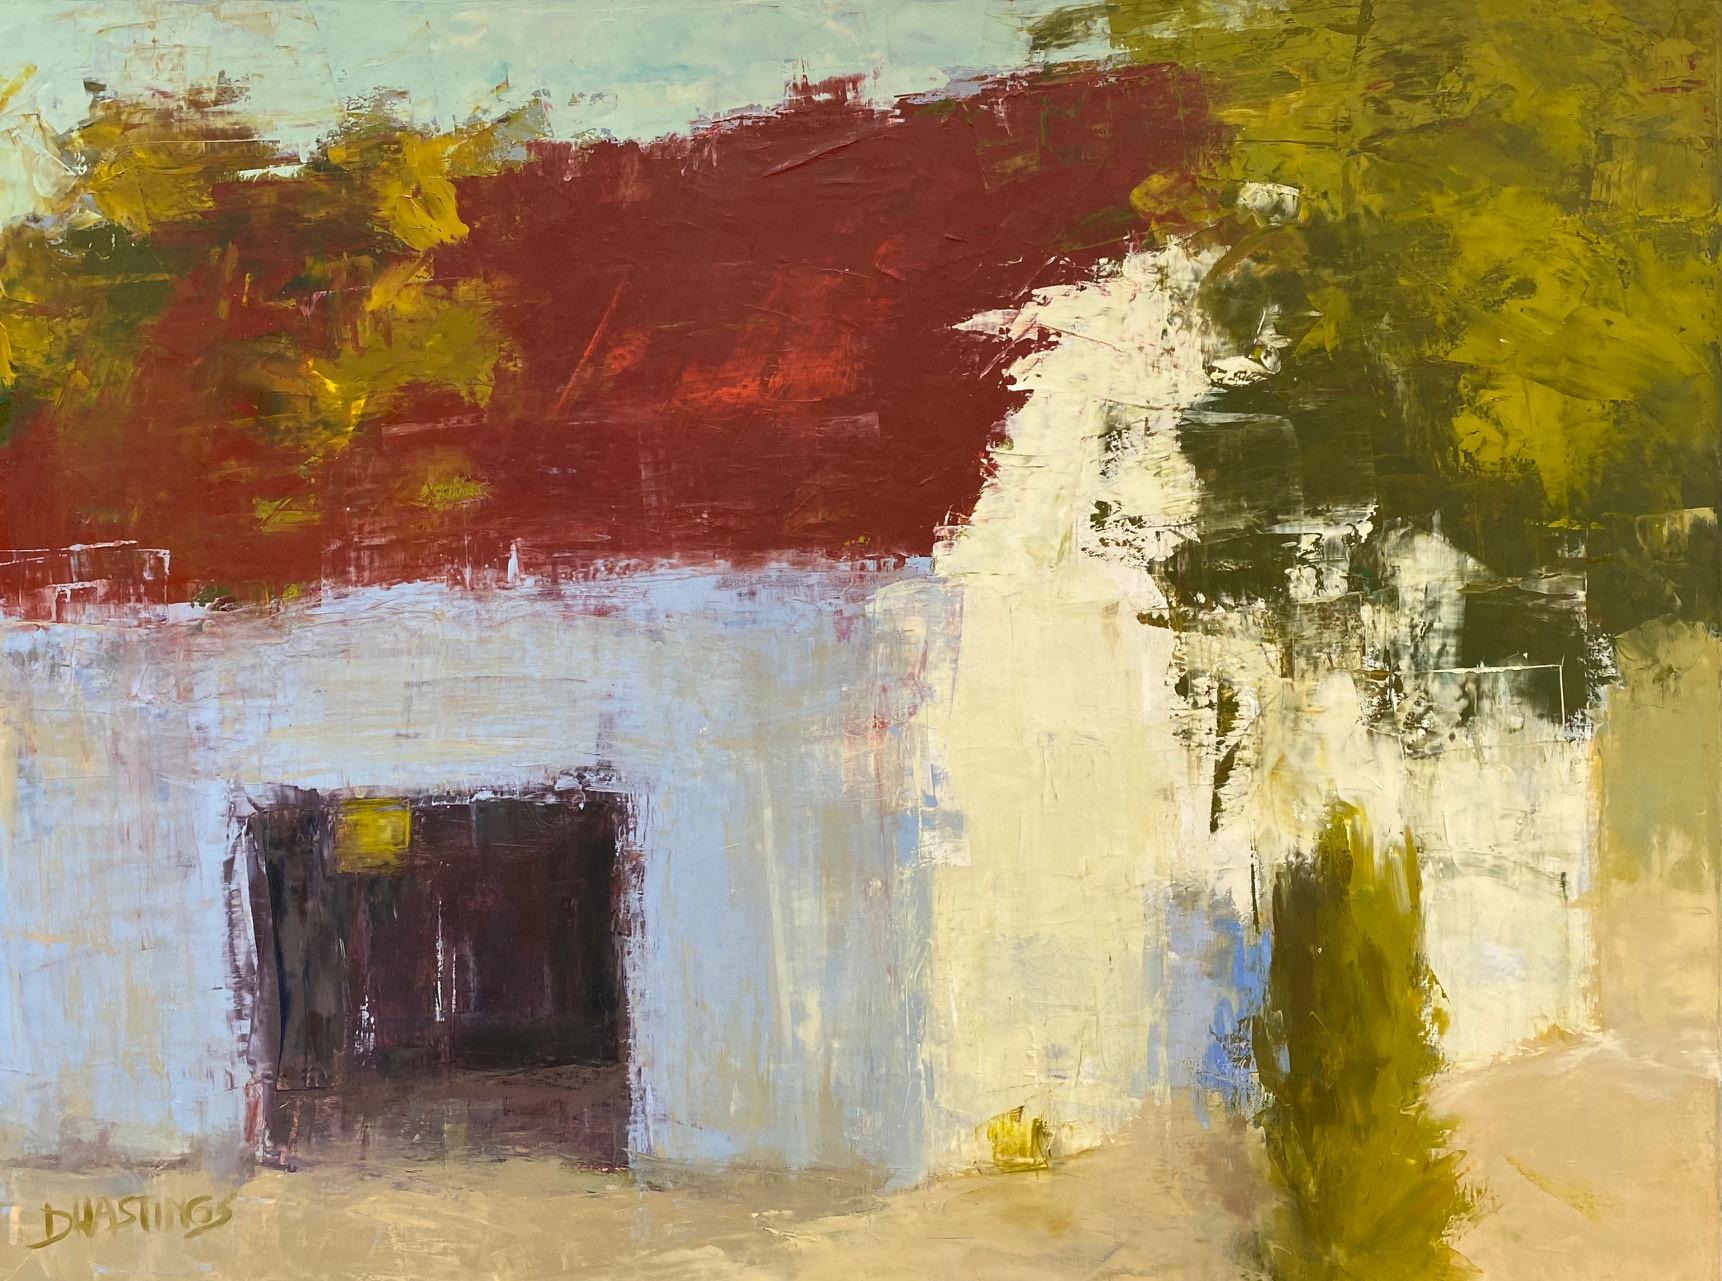 Allegro, abstrakte expressionistische Übergangslandschaft im Originalformat 30x40 – Painting von Daryl Hastings